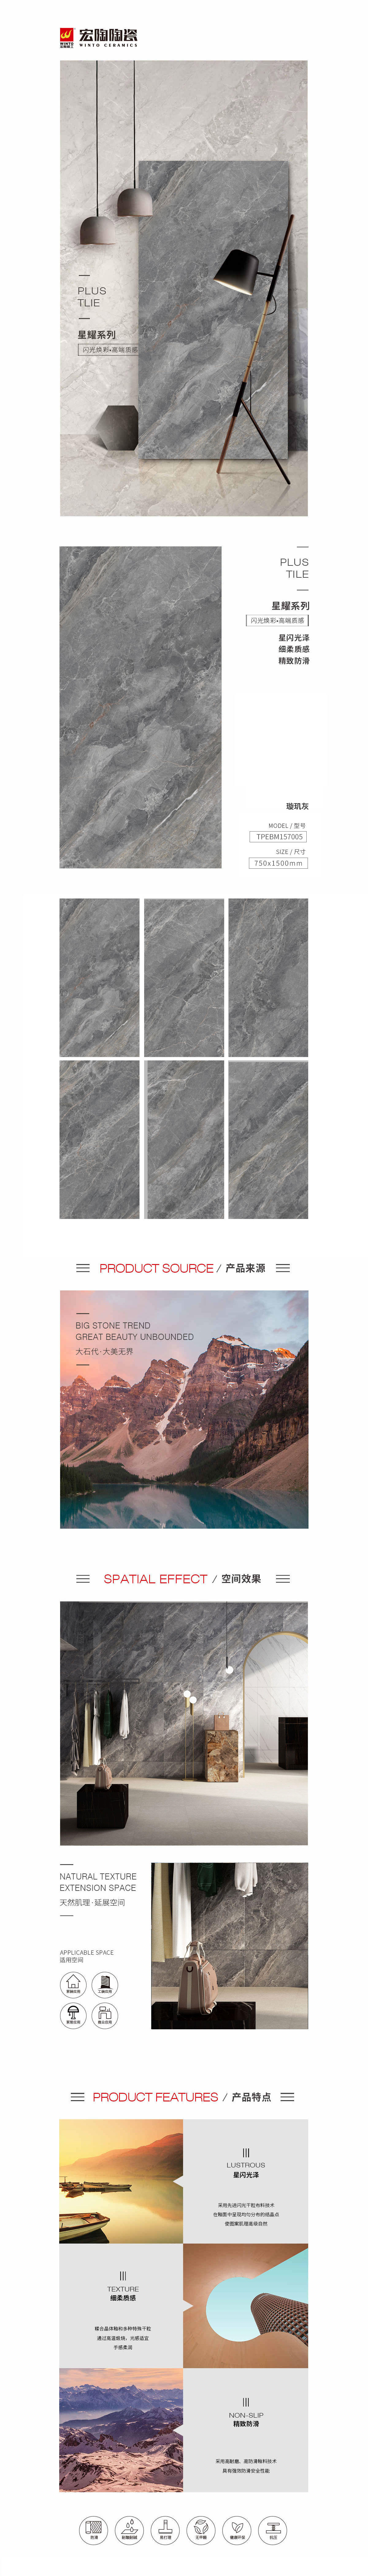 TPEBM157005璇玑灰陶瓷大板详细介绍了陶瓷大板的图片、规格、特点等，是佛山瓷砖，是蓝冠注册陶瓷品牌-中国陶瓷一线品牌。